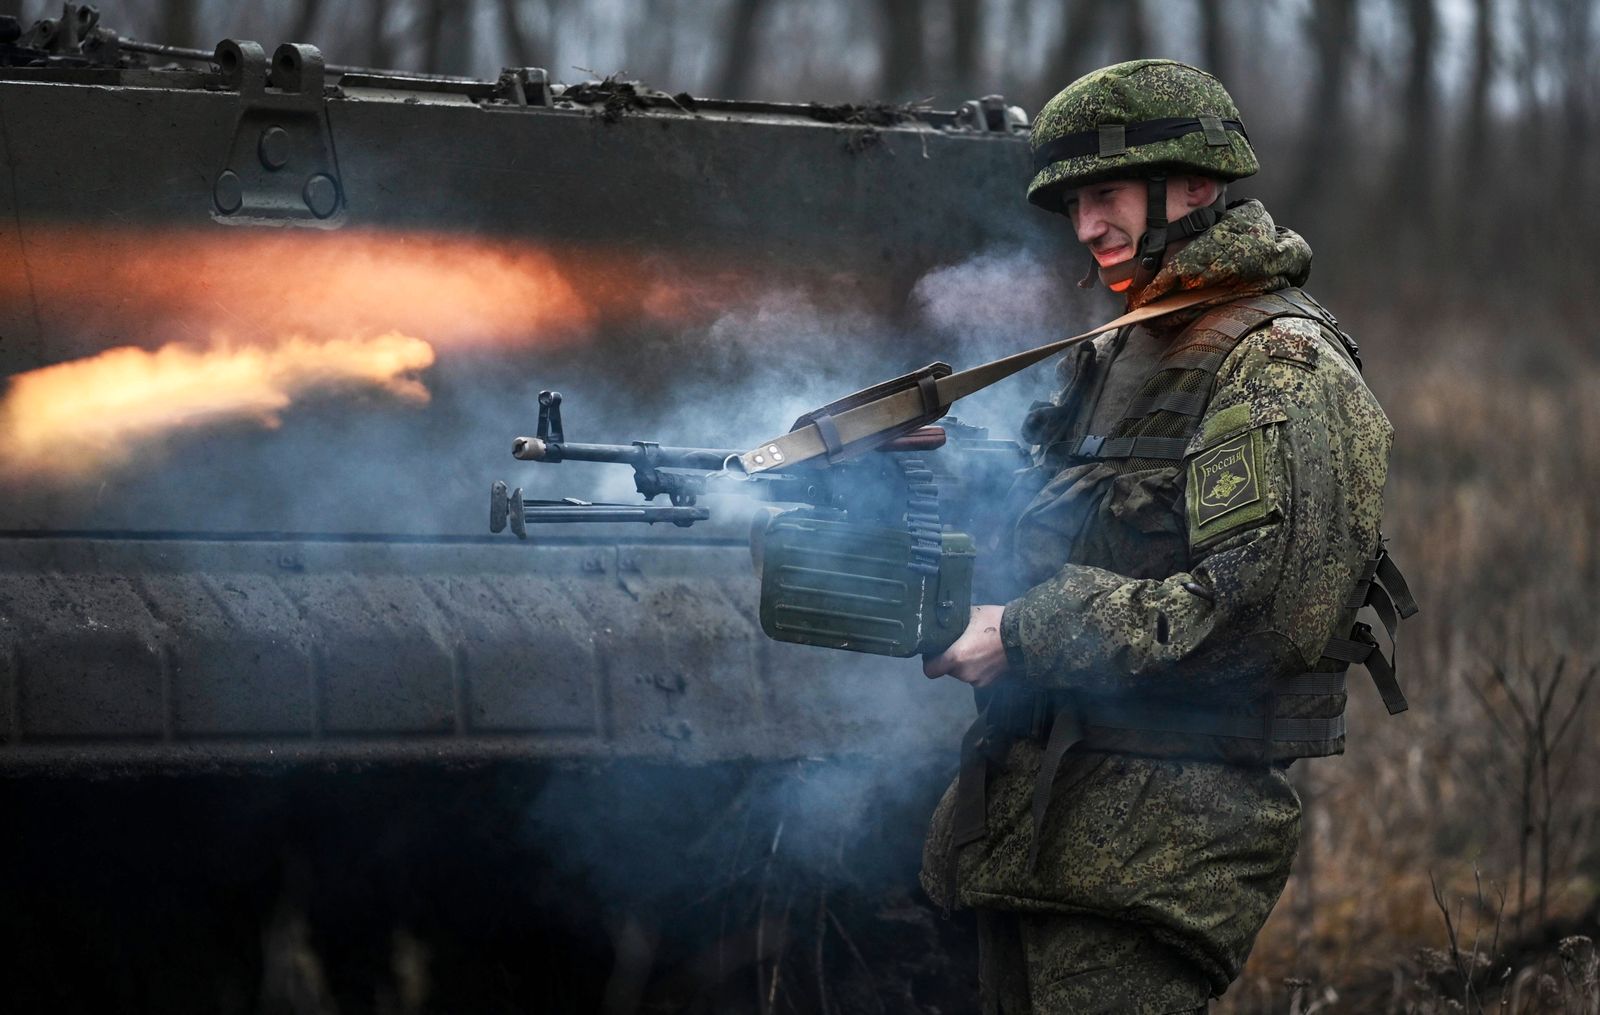 Các binh sĩ Nga được tăng cường ở miền nam Ukraine, theo Bộ Quốc phòng Anh. Ảnh minh họa: SNA